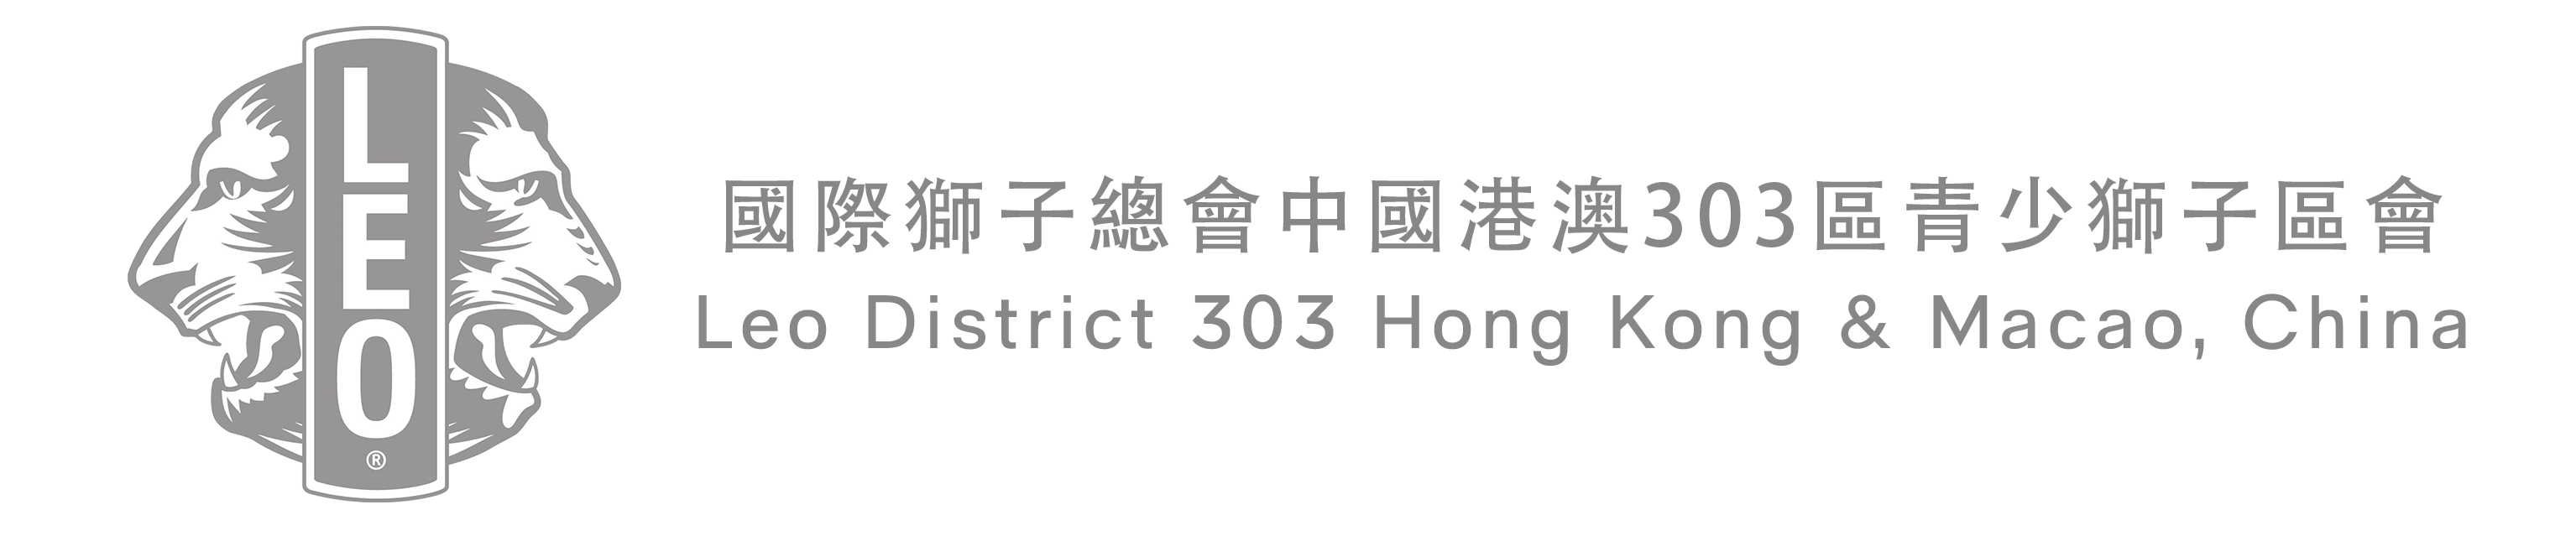 Leo District 303 Hong Kong & Macao, China